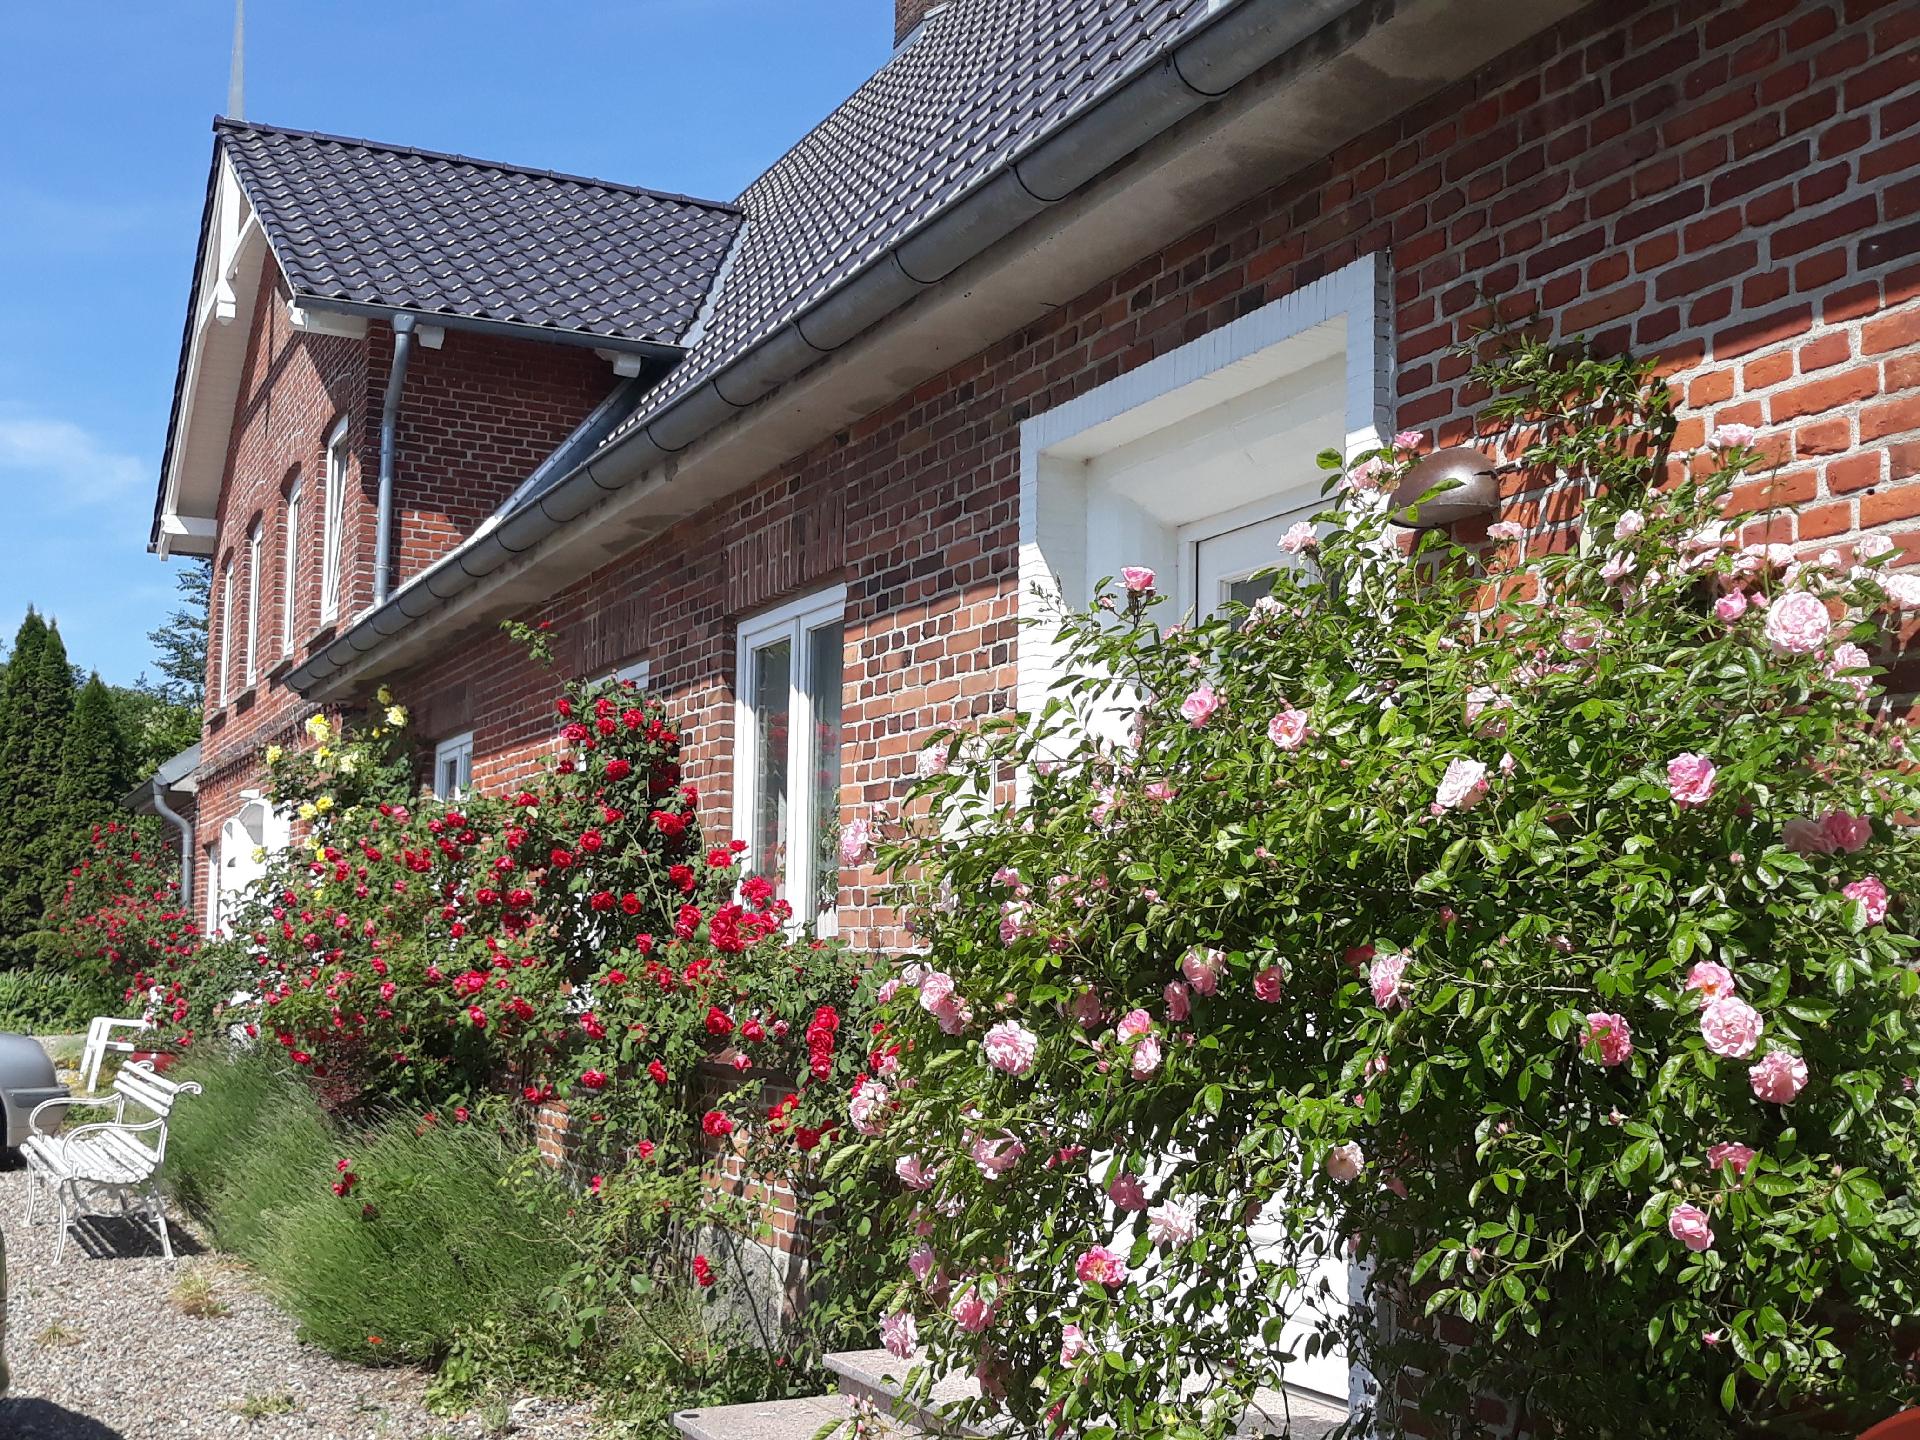 Ferienwohnung in Stoltebüll mit Kleiner Terra Ferienhaus in Schleswig Holstein